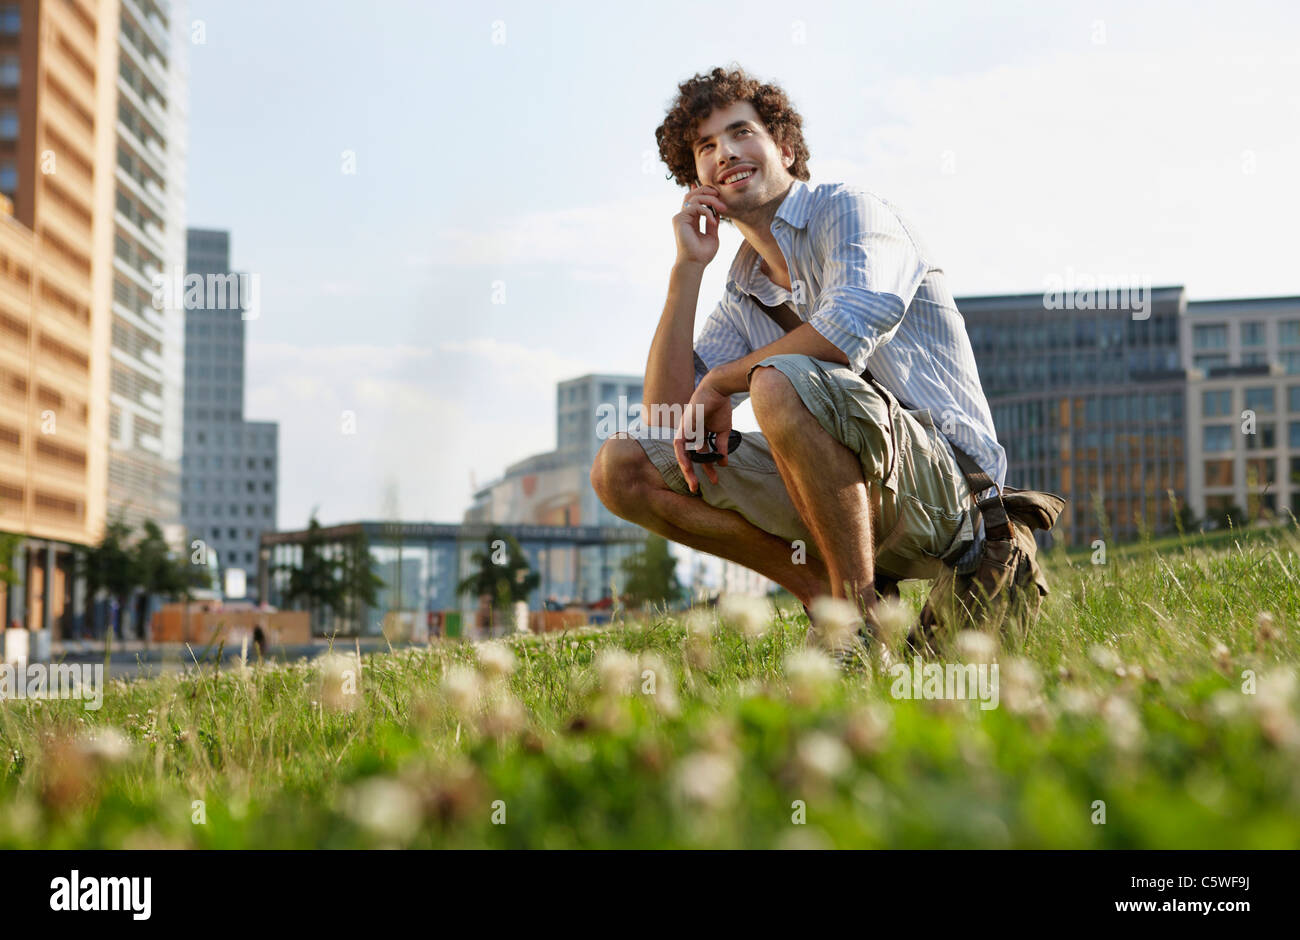 Germania, Berlino, giovane utilizzando il telefono cellulare, sorridente, ritratto Foto Stock